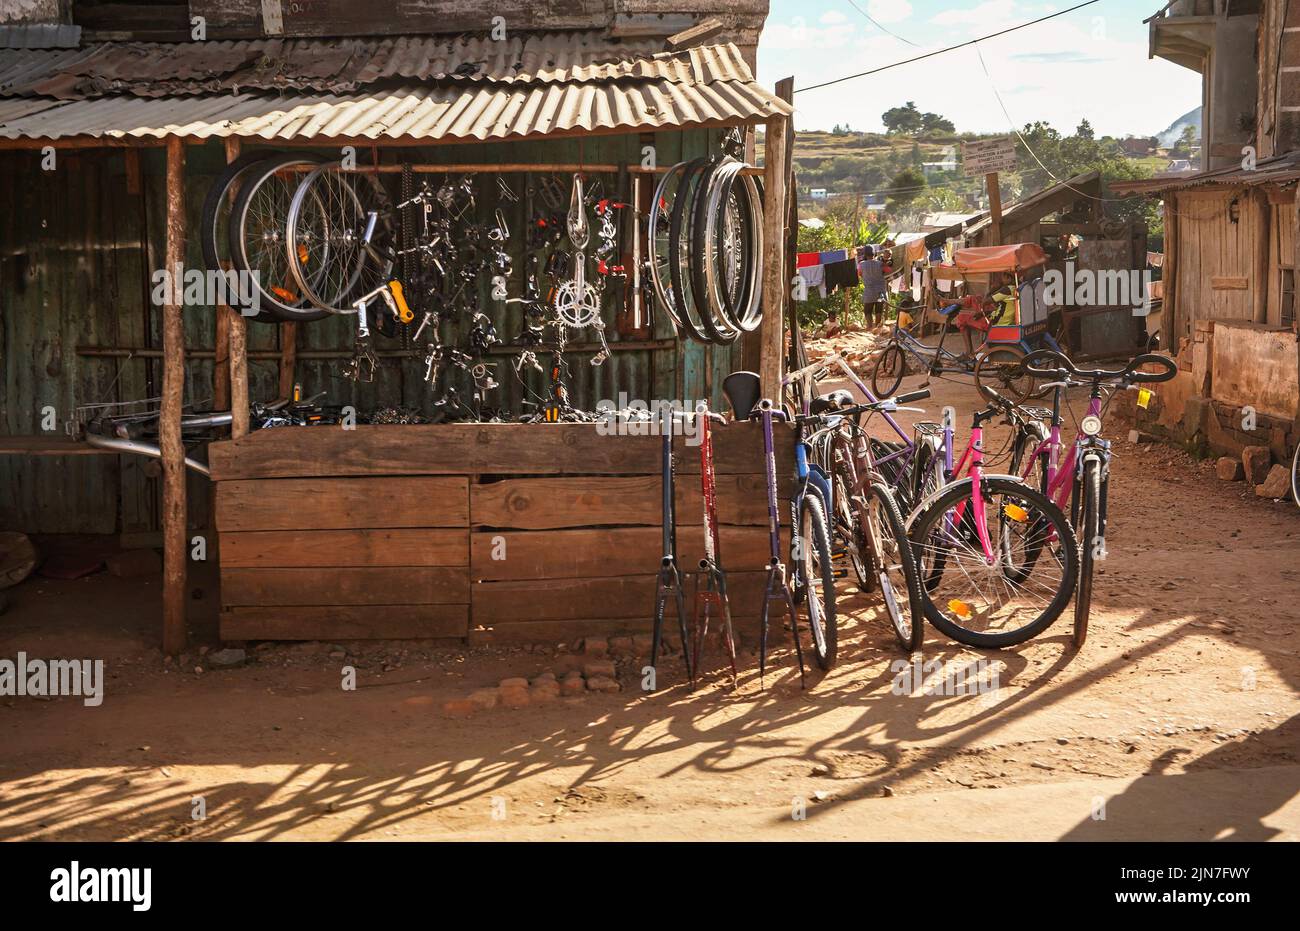 Antsirabe, Madagaskar - 06. Mai 2019: Kleiner provisorischer Barackenladen mit Fahrradteilen, die in der Nähe der Hauptstraße, der lokalen Insel Malagasy, hängende und gebrauchte Fahrräder ausstellten Stockfoto